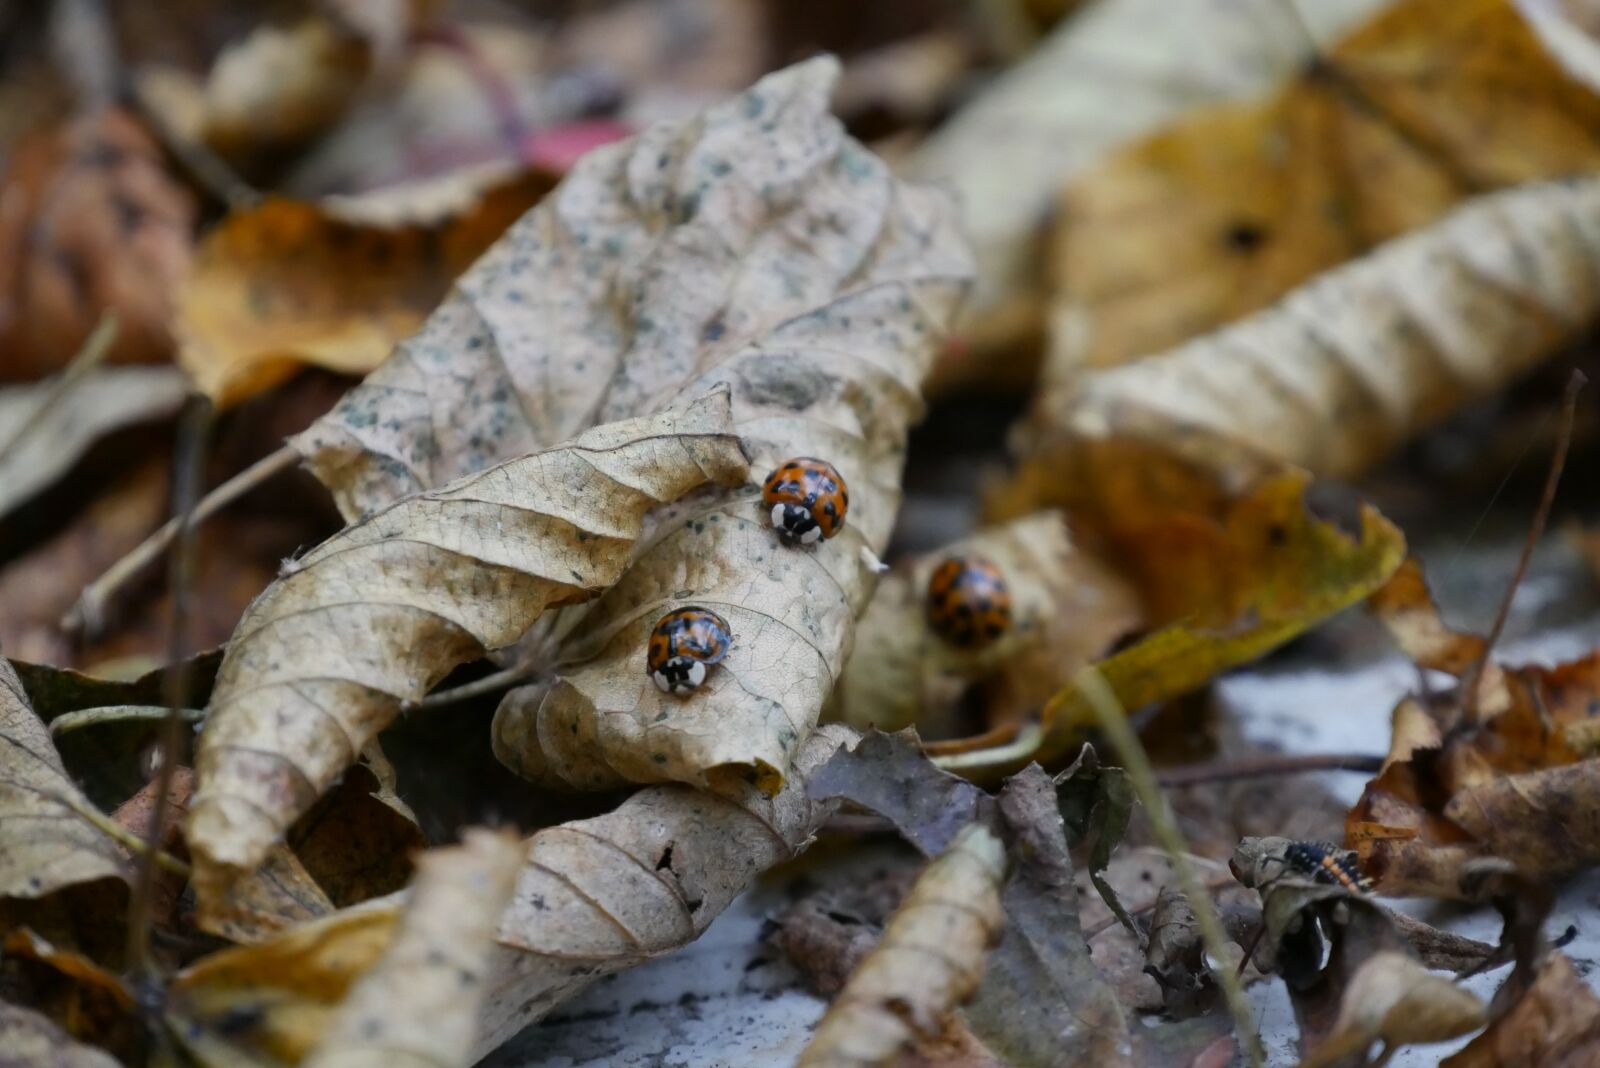 Panasonic DMC-G70 sample photo. Leaves, ladybug, forest photography